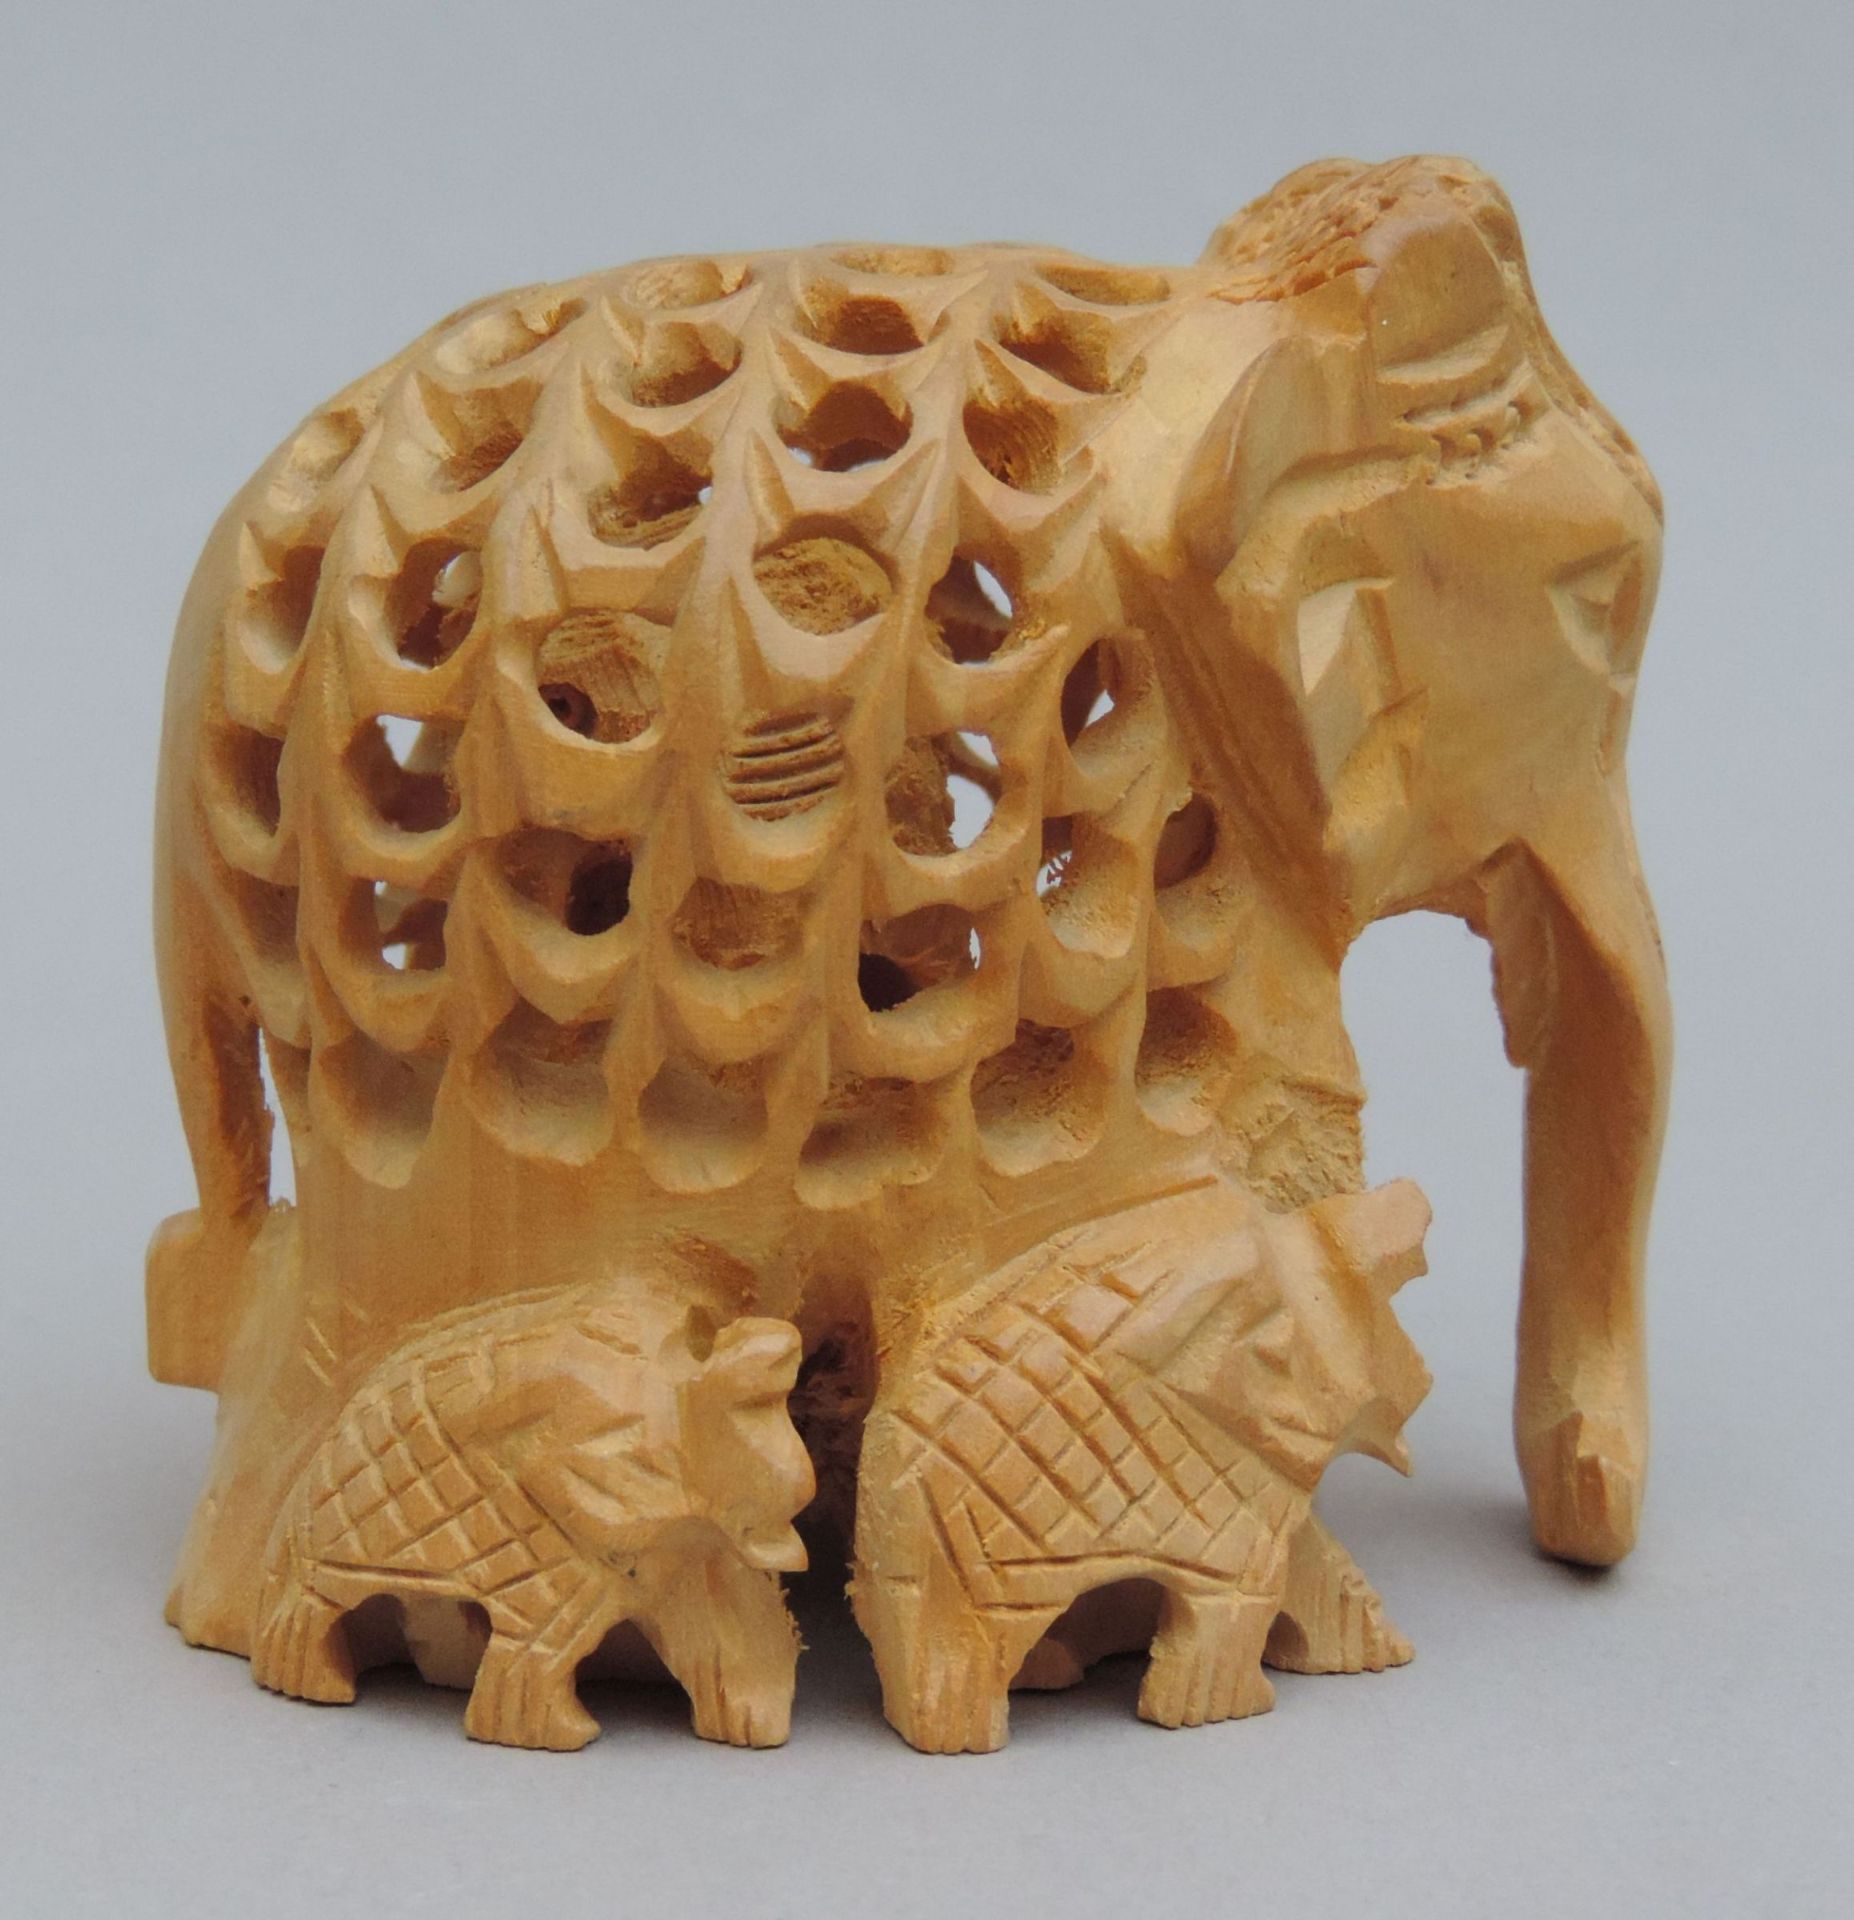 FIGUR, Holz, asiatisch, neuzeitlich, Elefant m durchbrochenem Korpus, innenliegend ein Weiterer,